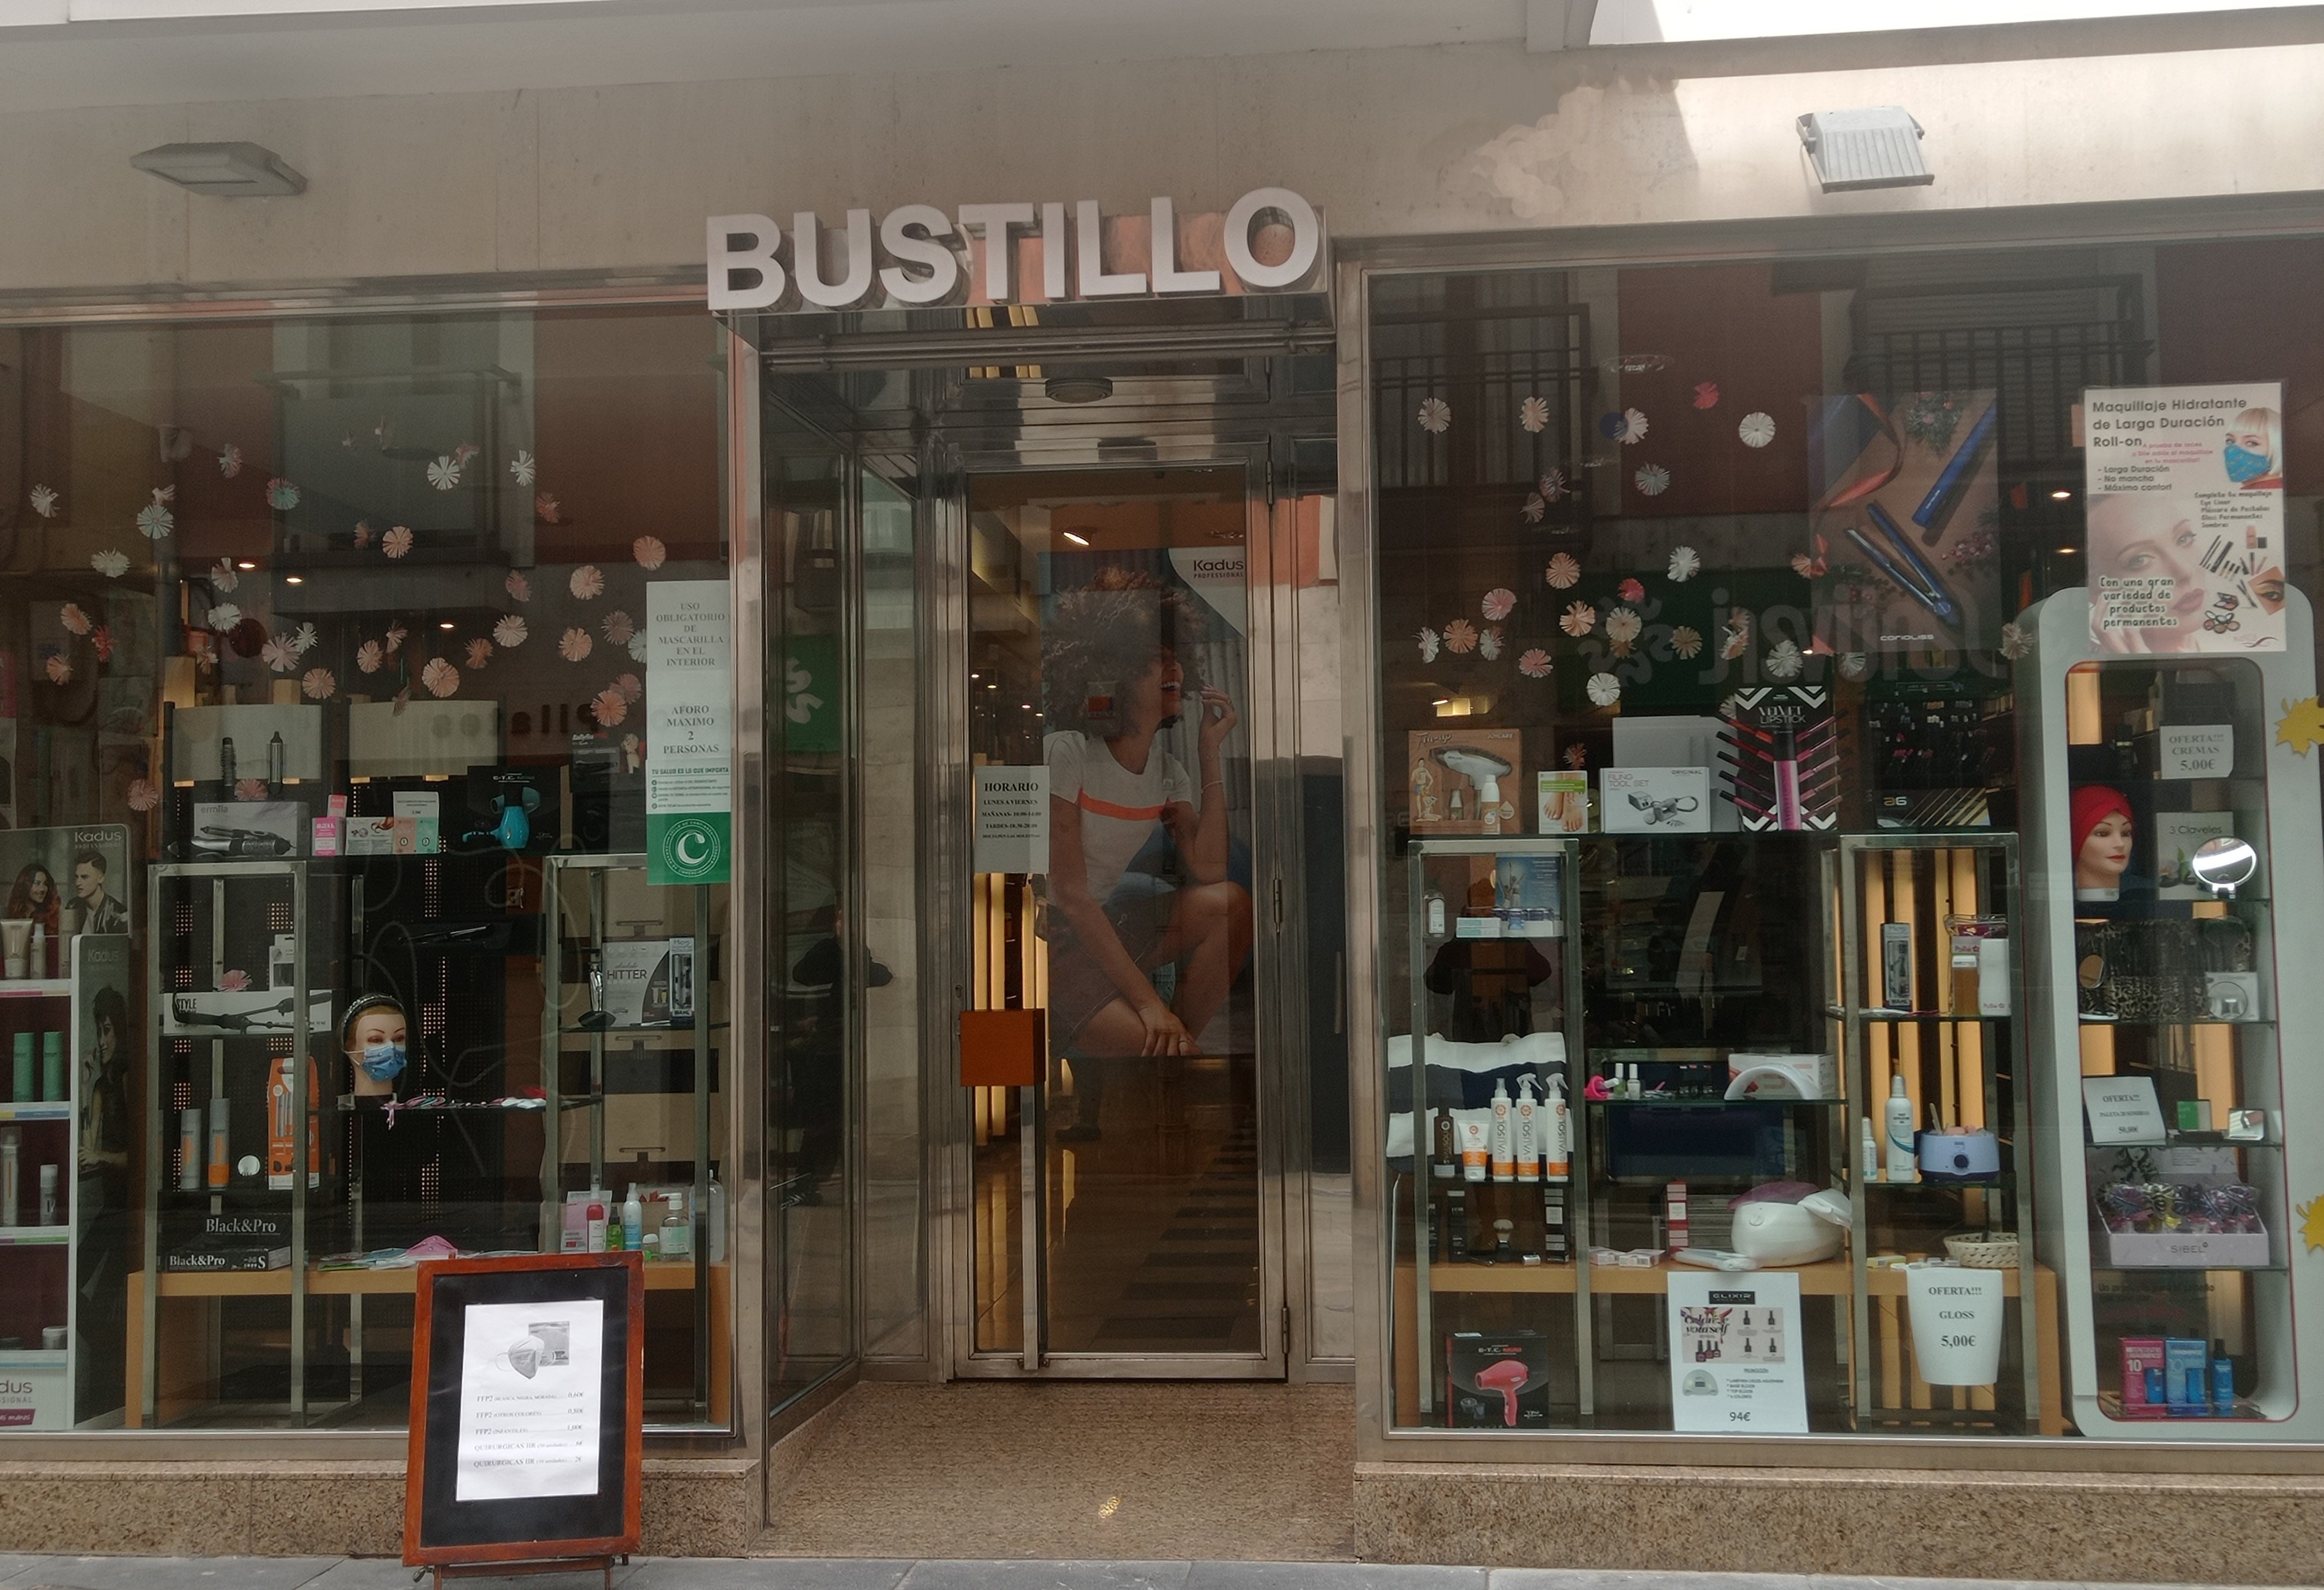 Bustillo